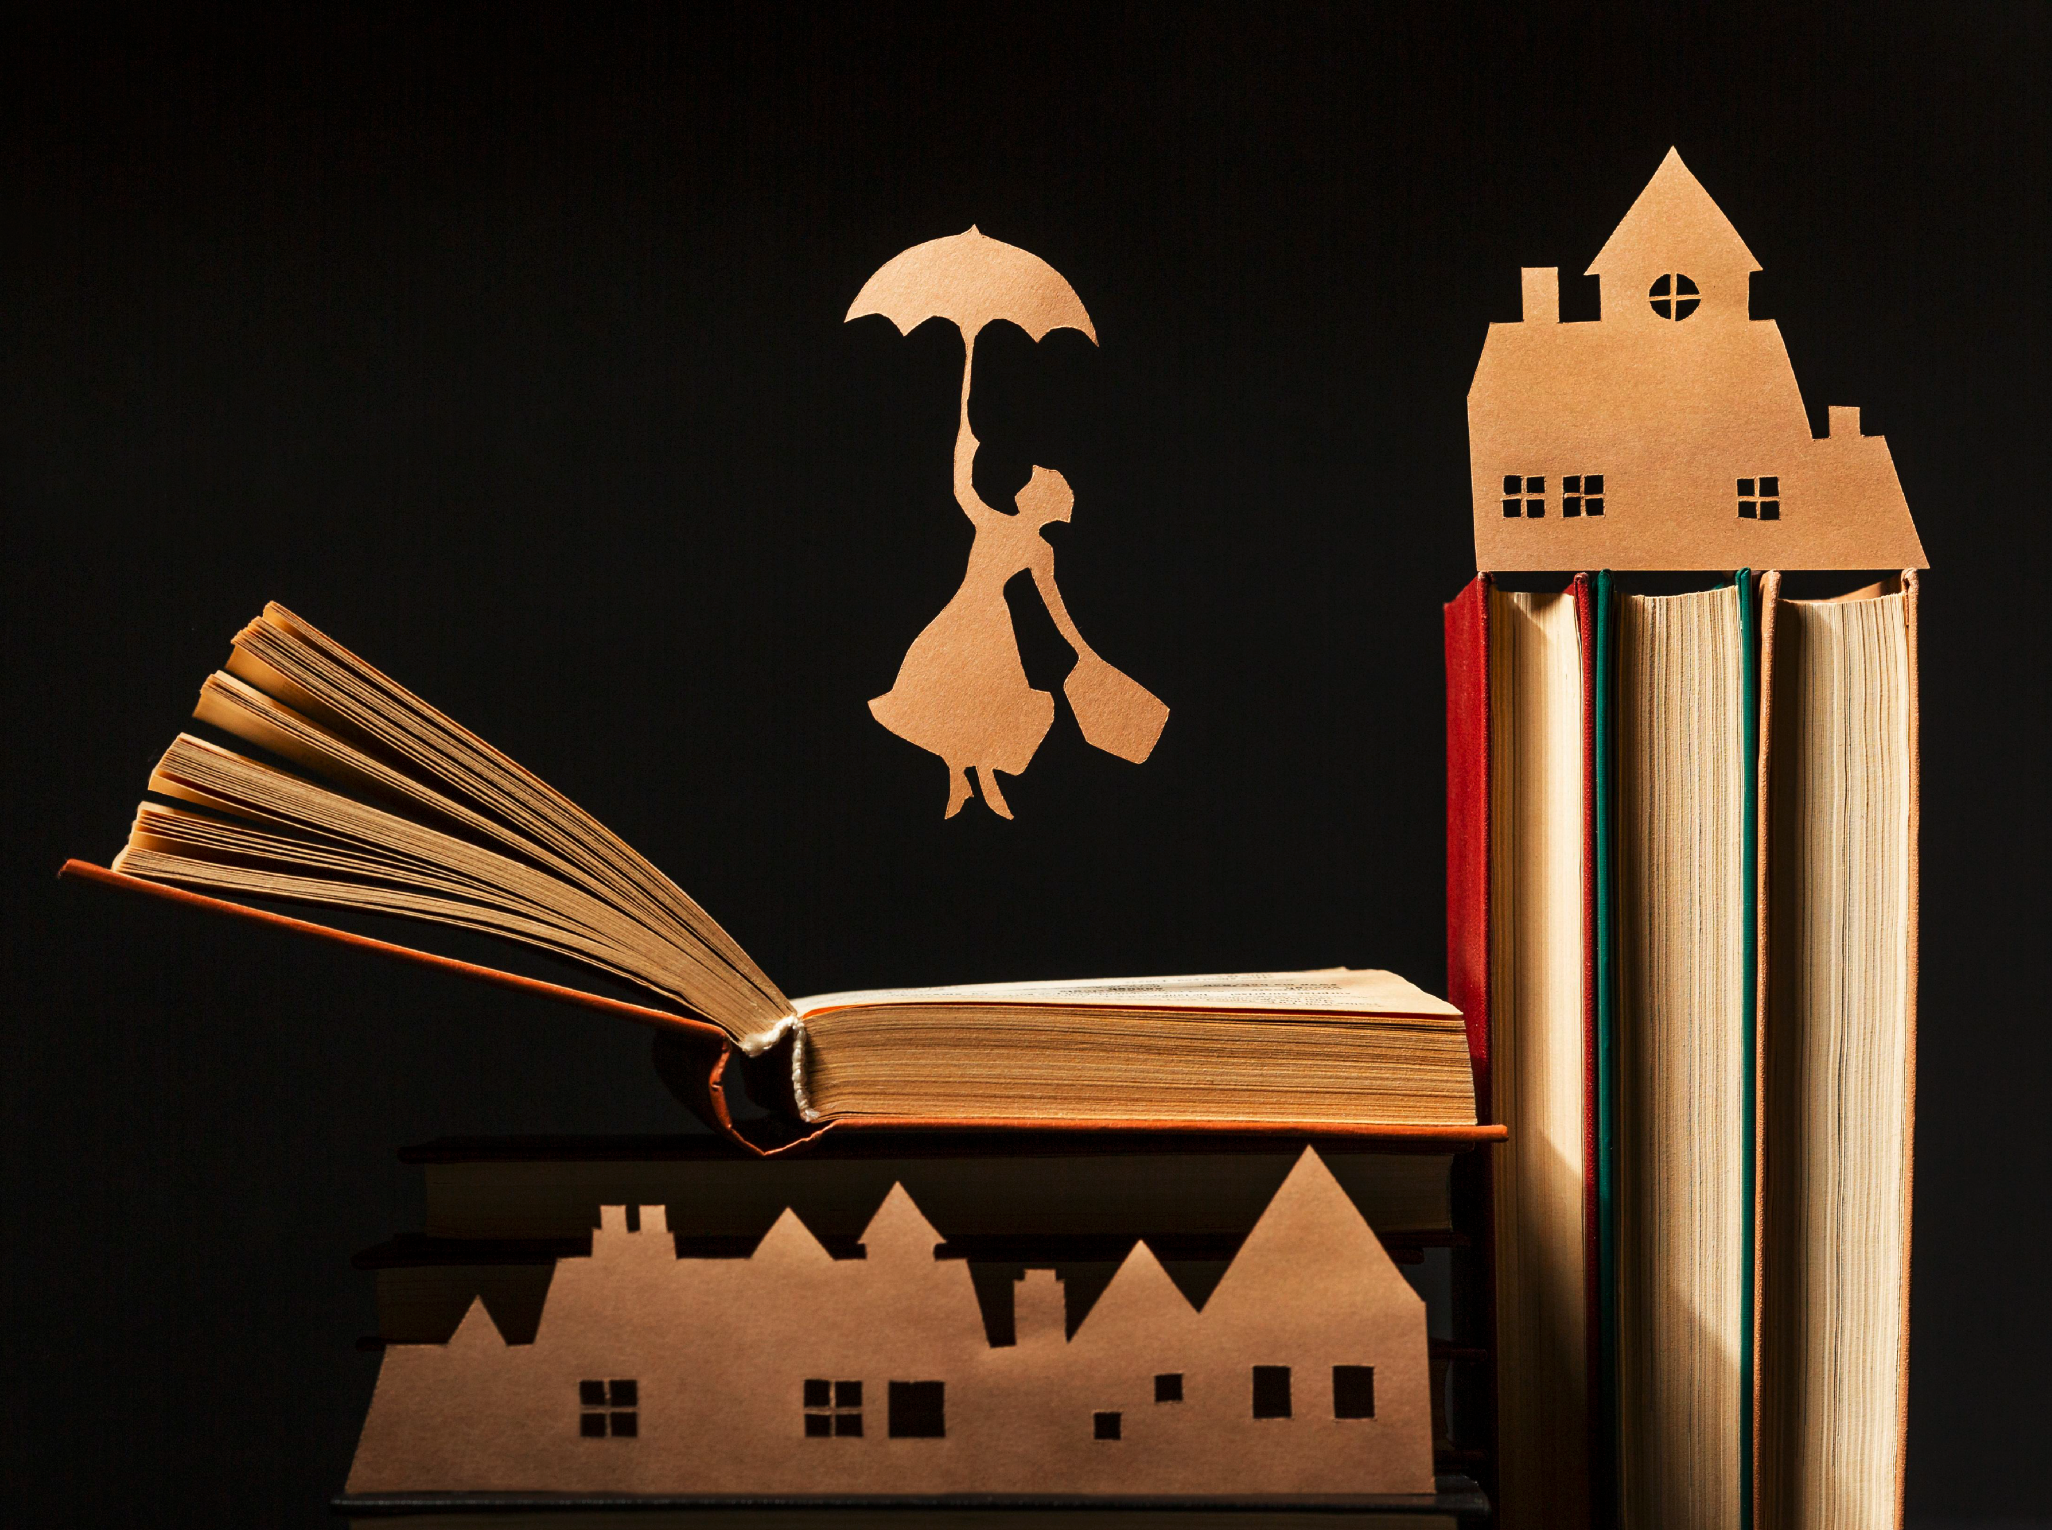 en bild på böcker och en pappersfigur som flyger med sitt paraply och även några pappershussiluetter